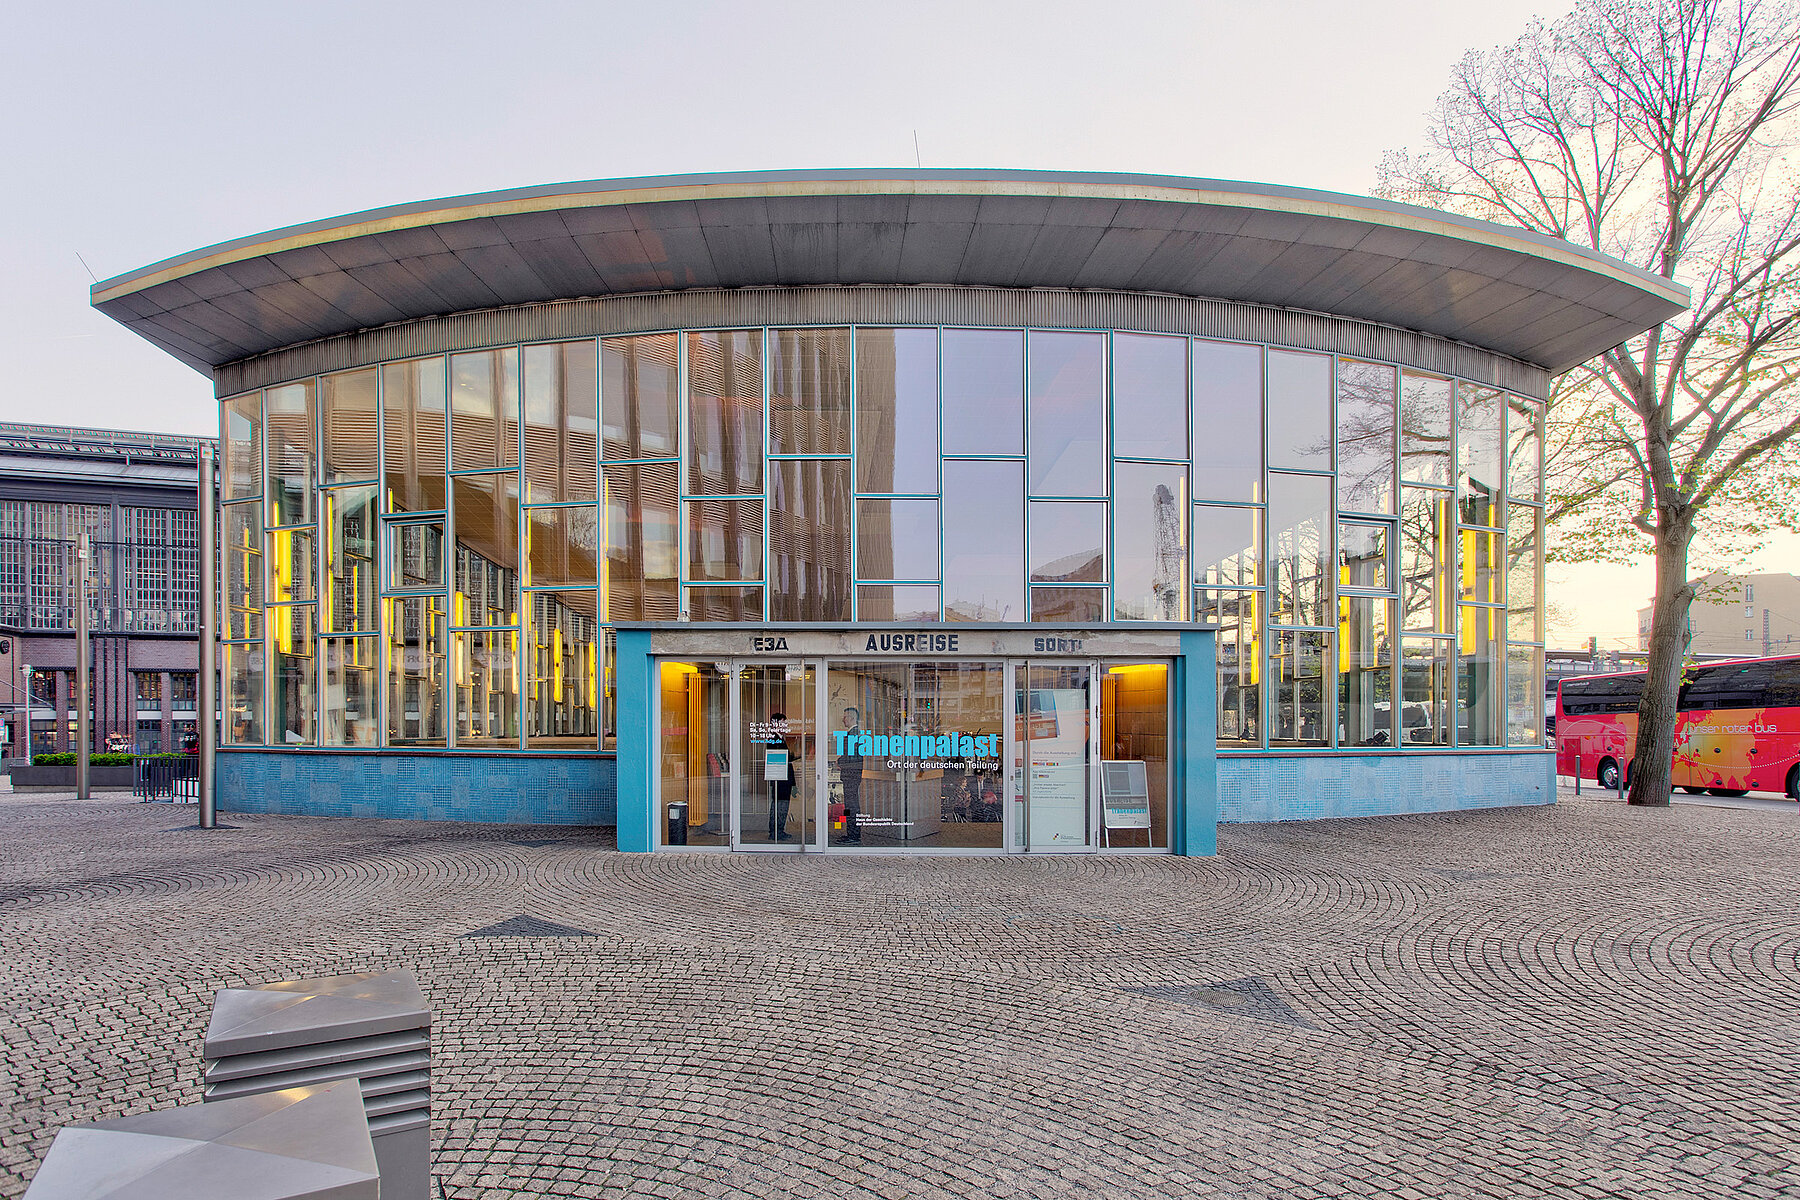 Der Tränenpalast in Frontalansicht mit Glasfront und Eingangstür vor dem Bahnhof Friedrichstraße im Dämmerlicht.